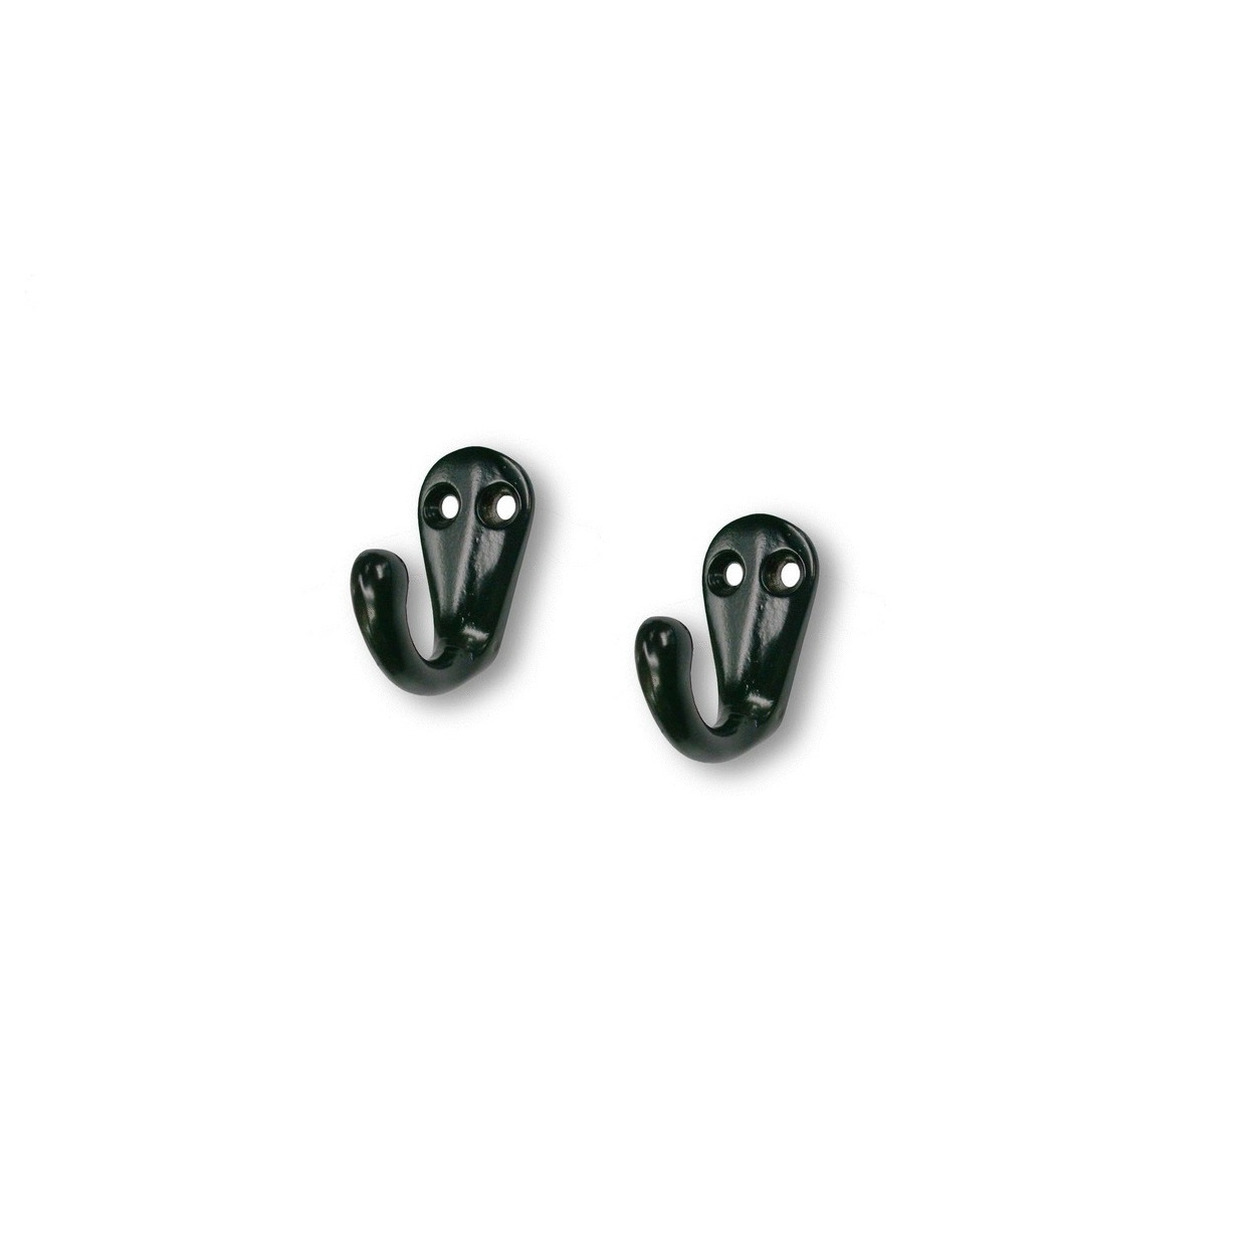 3x Zwarte korte garderobe haakjes-jashaken-kapstokhaakjes metaal 3,3 x 4,1 cm